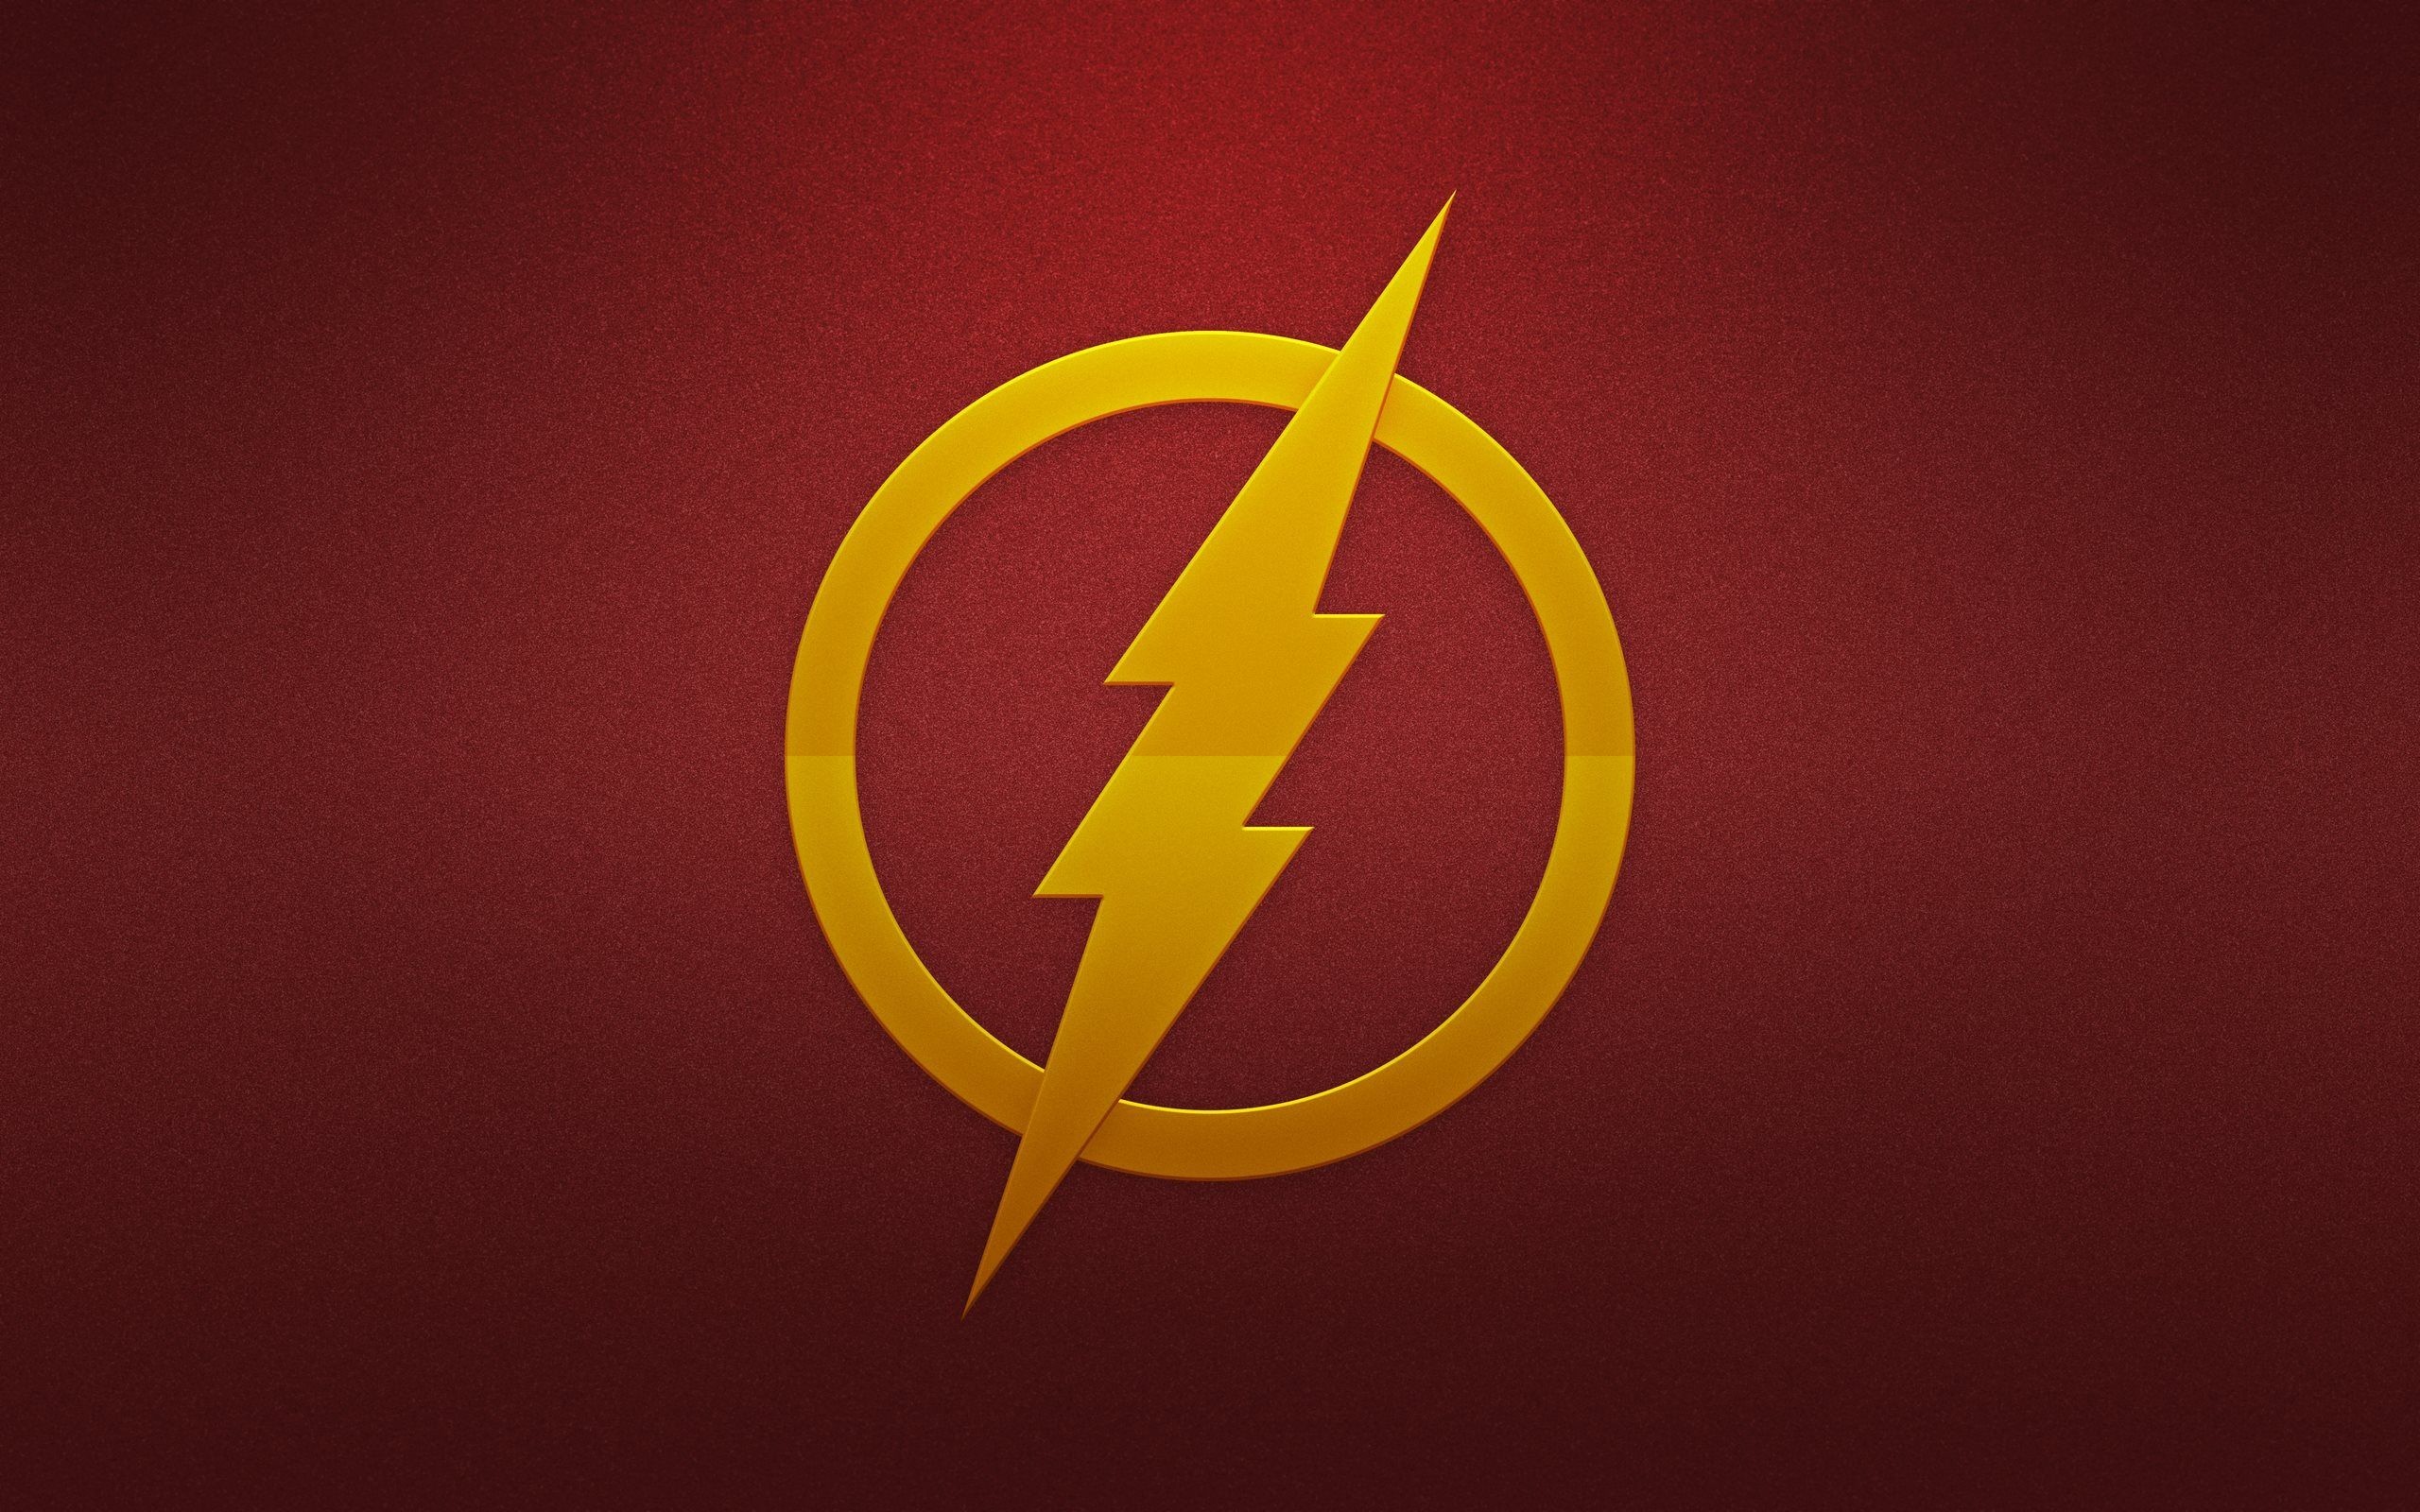 2560x1600 1920x1475 The Flash DC-comics d-c superhero wallpaper | | 126833 |  WallpaperUP